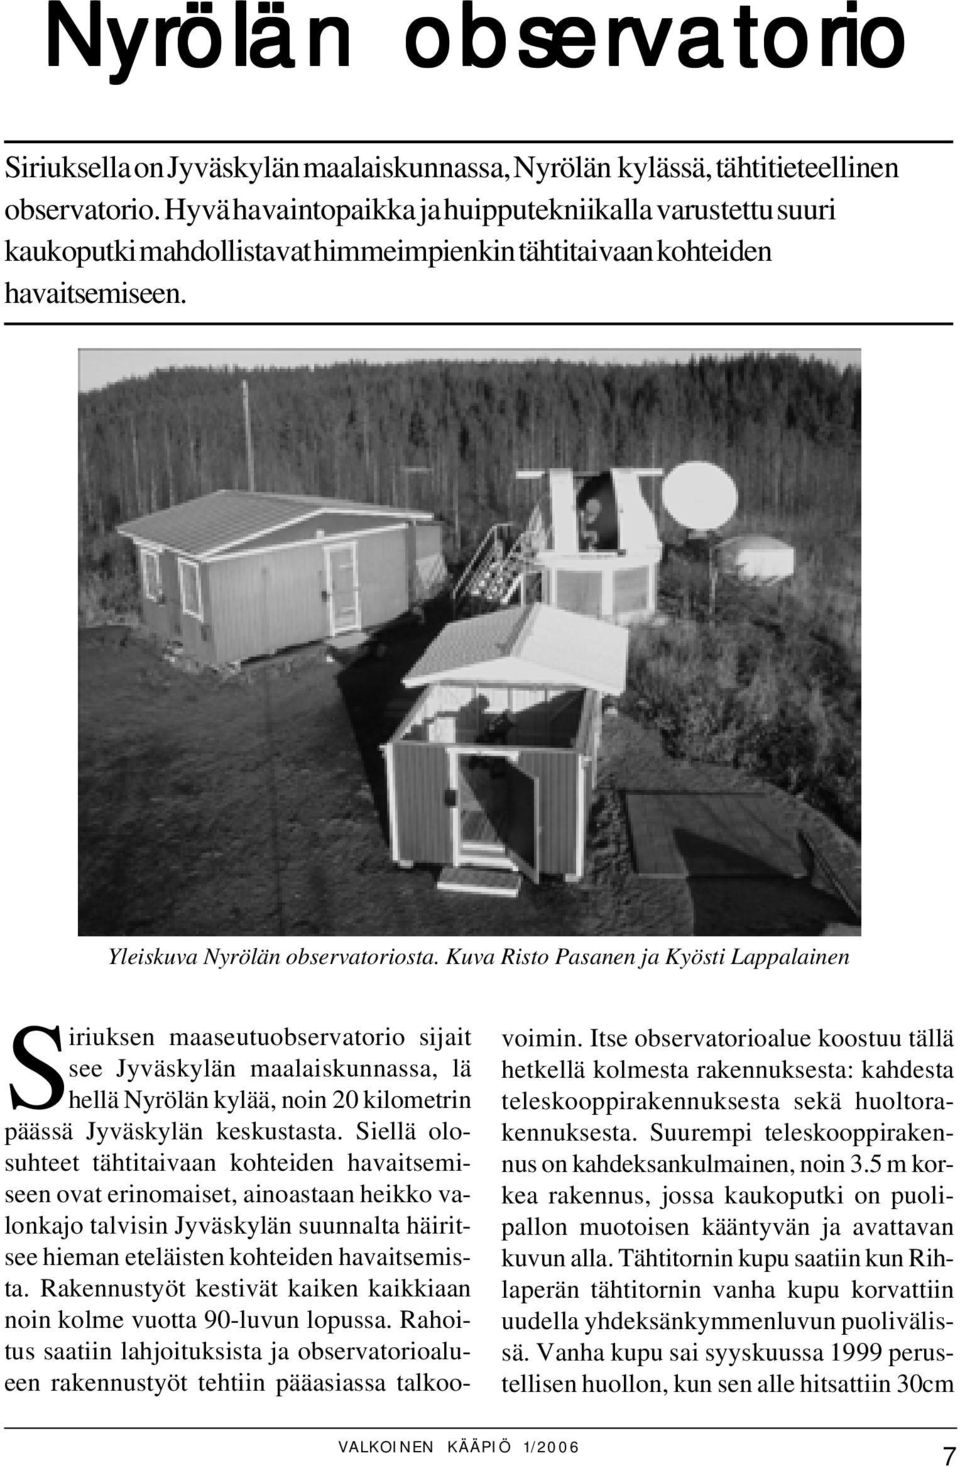 Kuva Risto Pasanen ja Kyösti Lappalainen Siriuksen maaseutuobservatorio sijait see Jyväskylän maalaiskunnassa, lä hellä Nyrölän kylää, noin 20 kilometrin päässä Jyväskylän keskustasta.